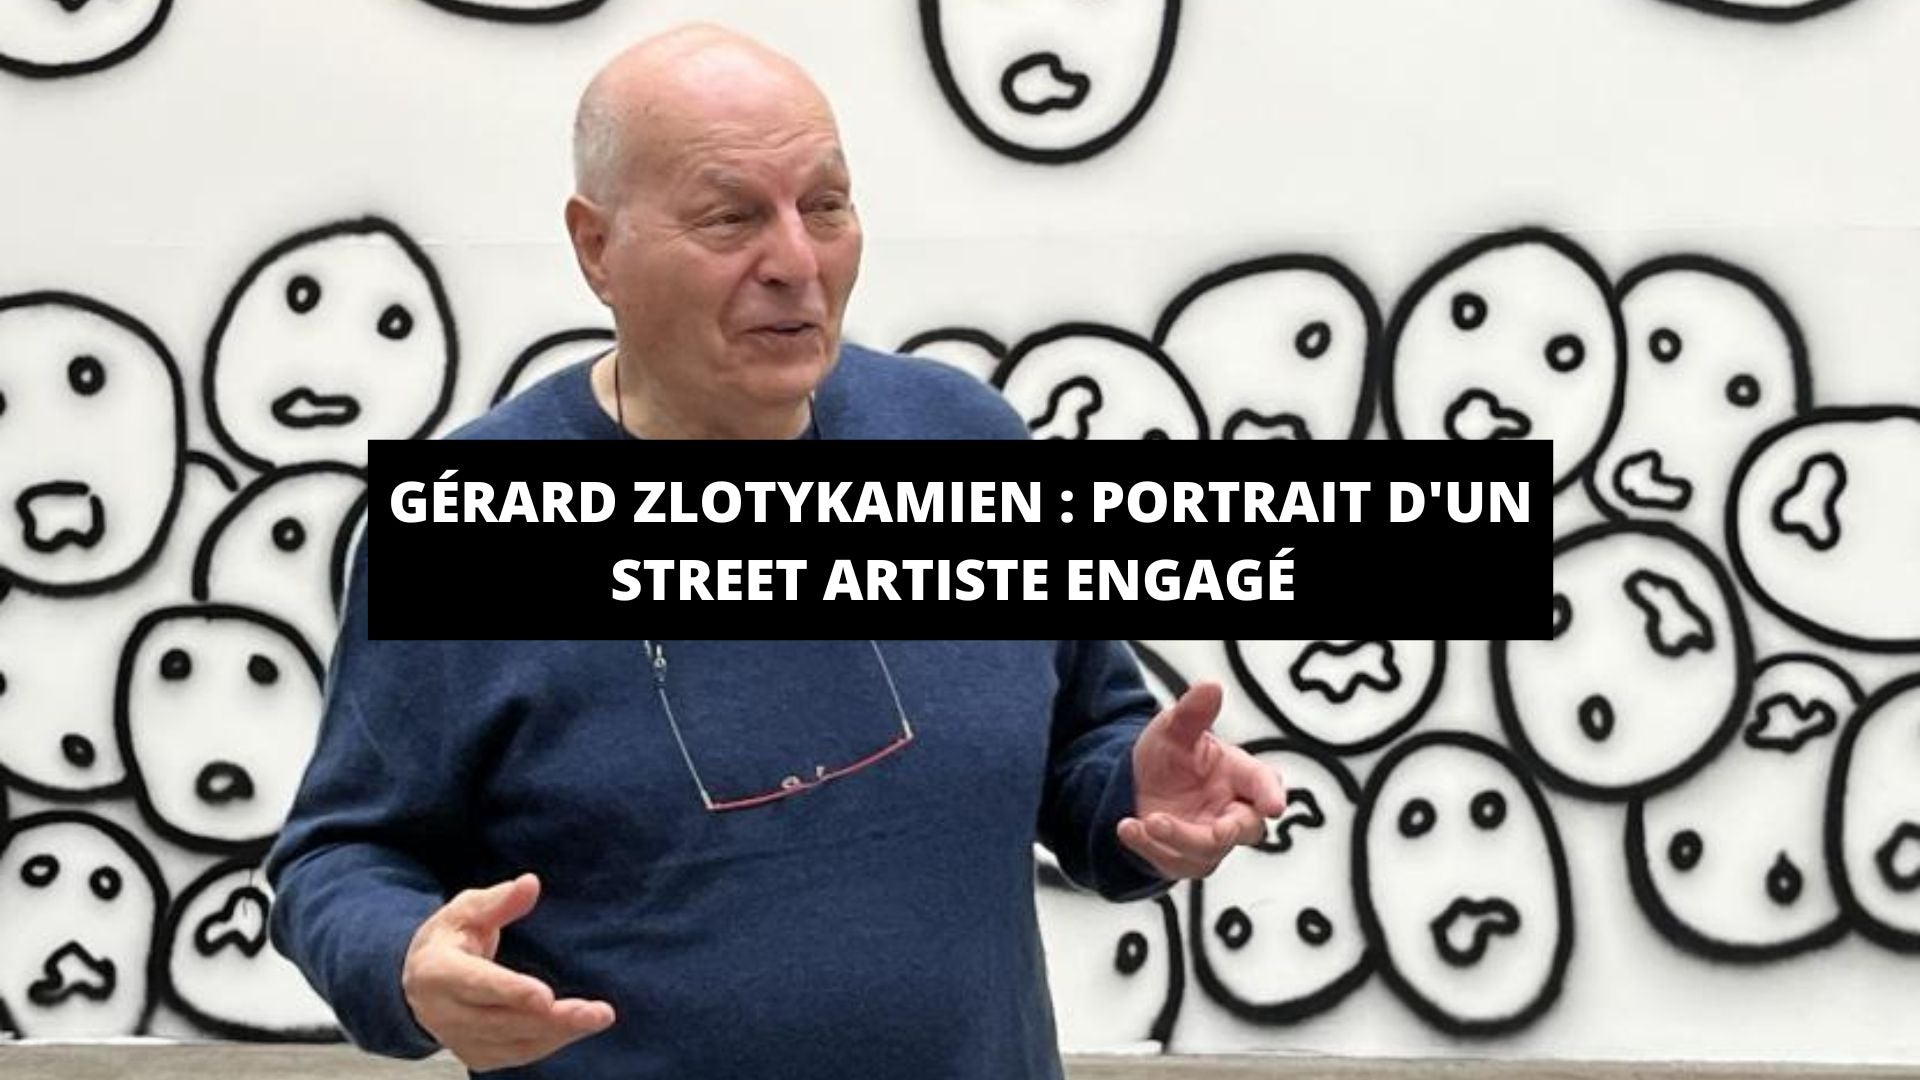 Gérard Zlotykamien : portrait d'un street artiste français engagé depuis les années 60 - The Art Avenue